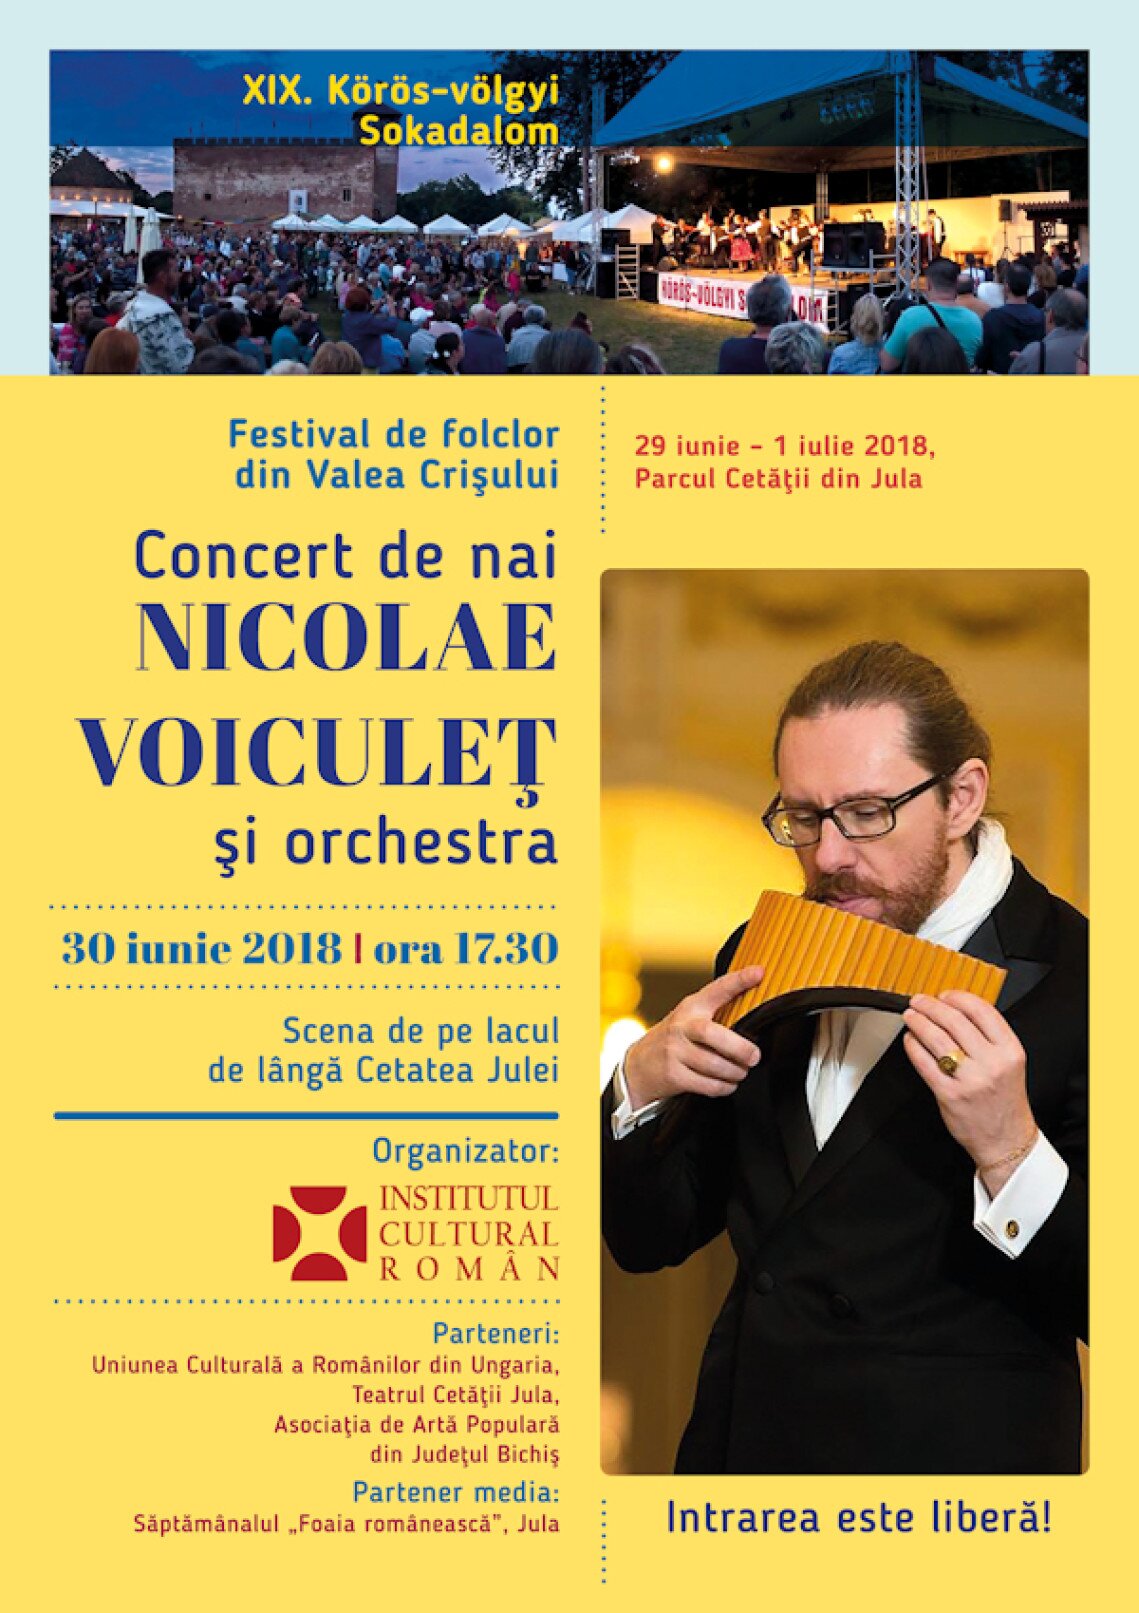 Nicolaie-Voiculet-2018-concert-gyula-02.jpg